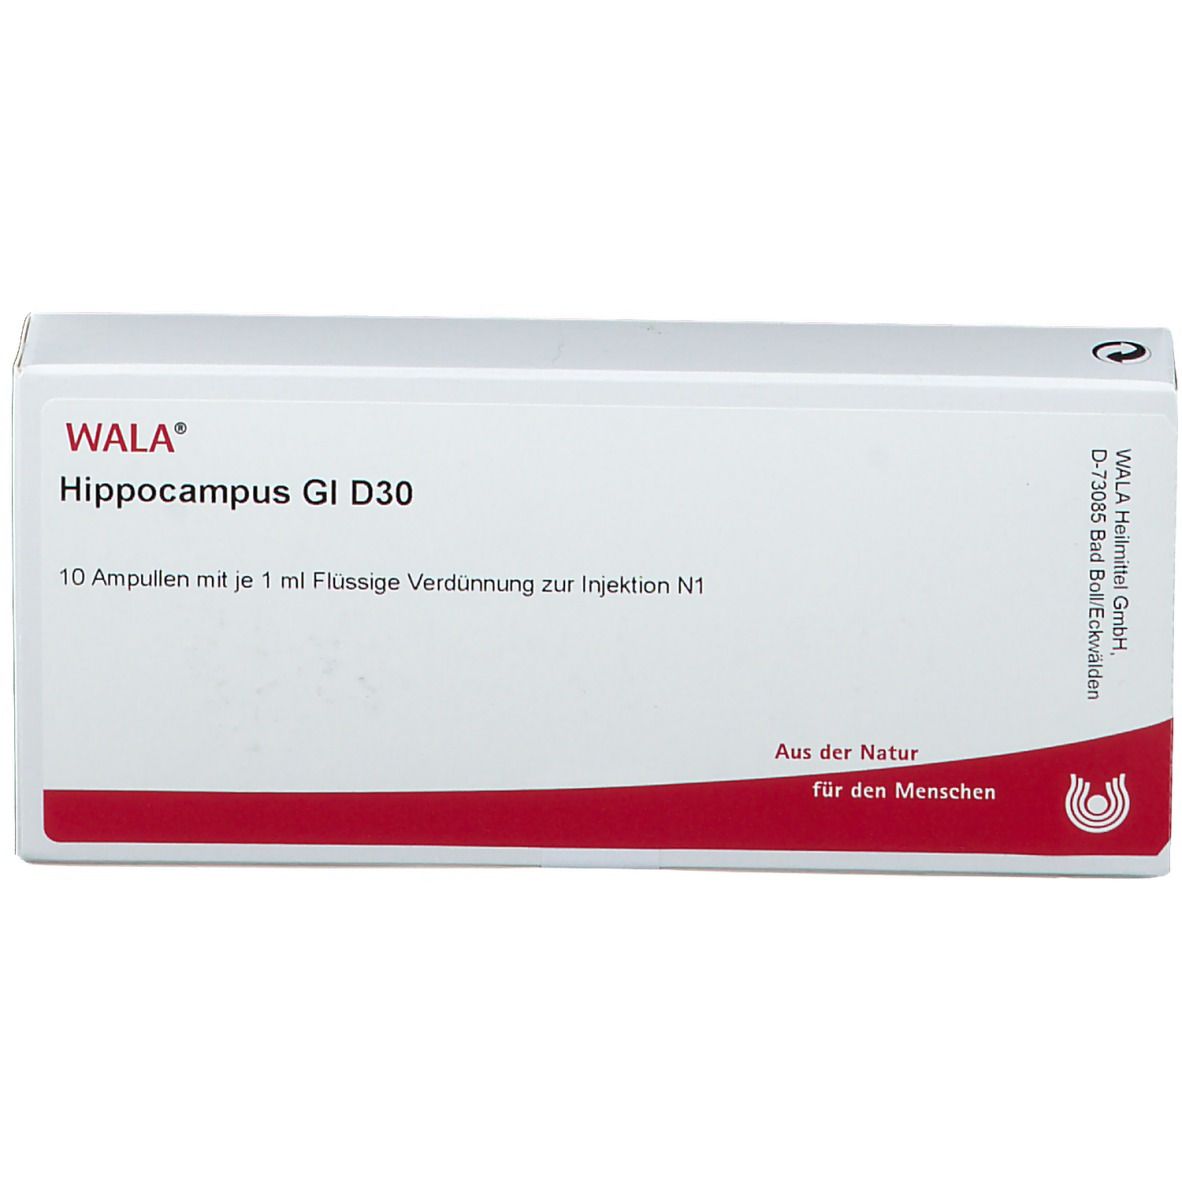 WALA® Hippocampus Gl D 30